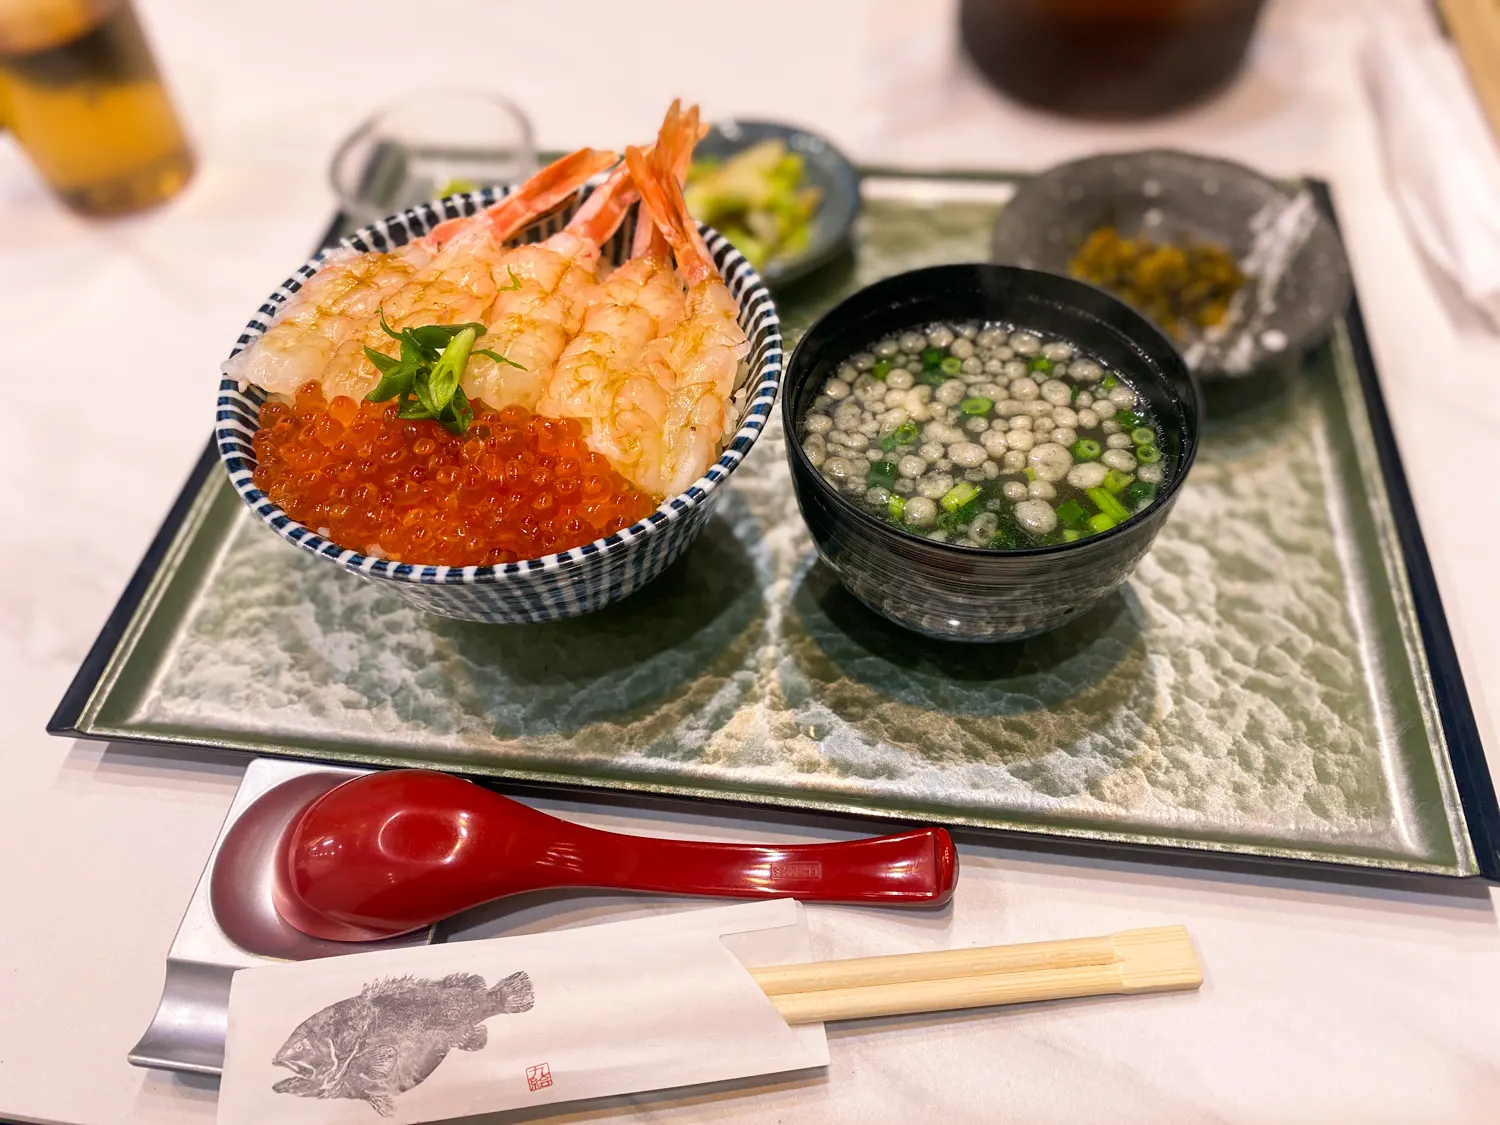 福岡市中央区でおいしい海鮮丼を食べたいなら 福岡いくら家丼よしよし3